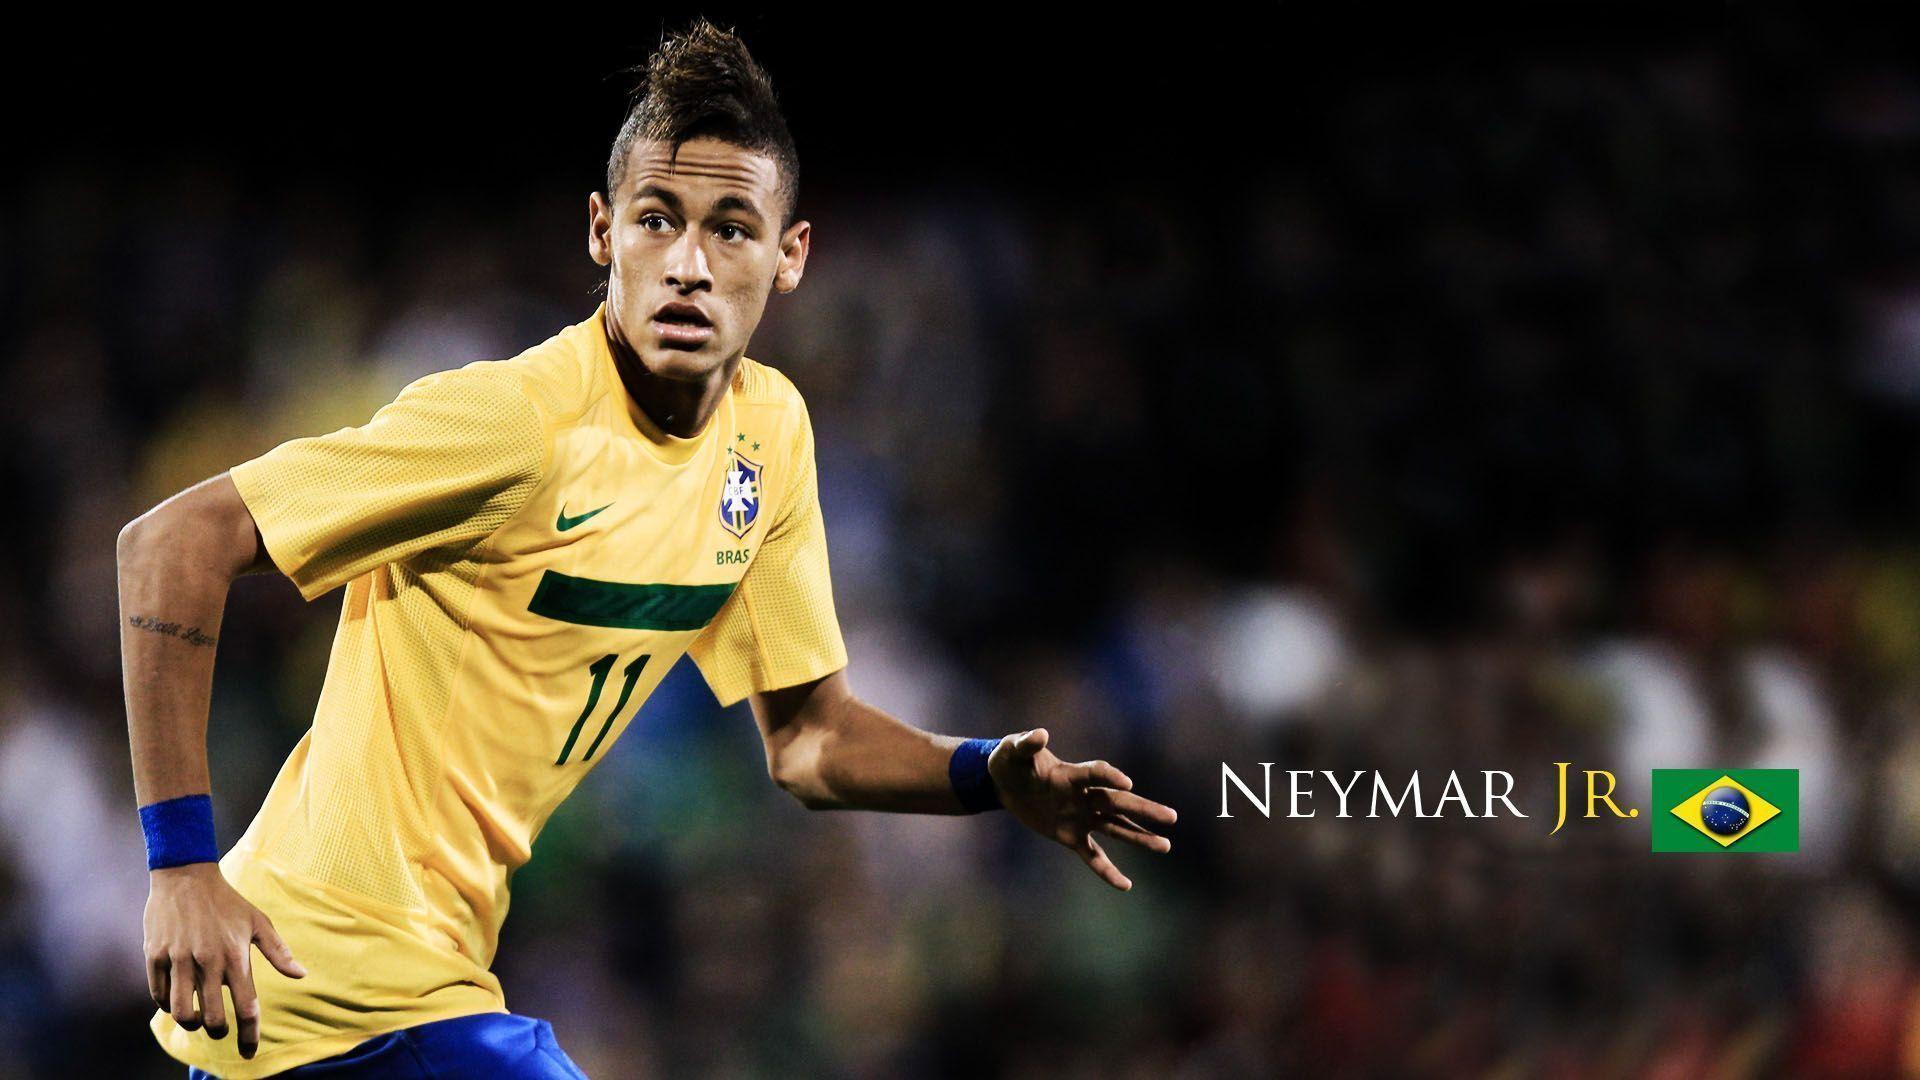 Neymar Brazil 2014 Scoring Wallpaper. Widescreen Wallpaper. High